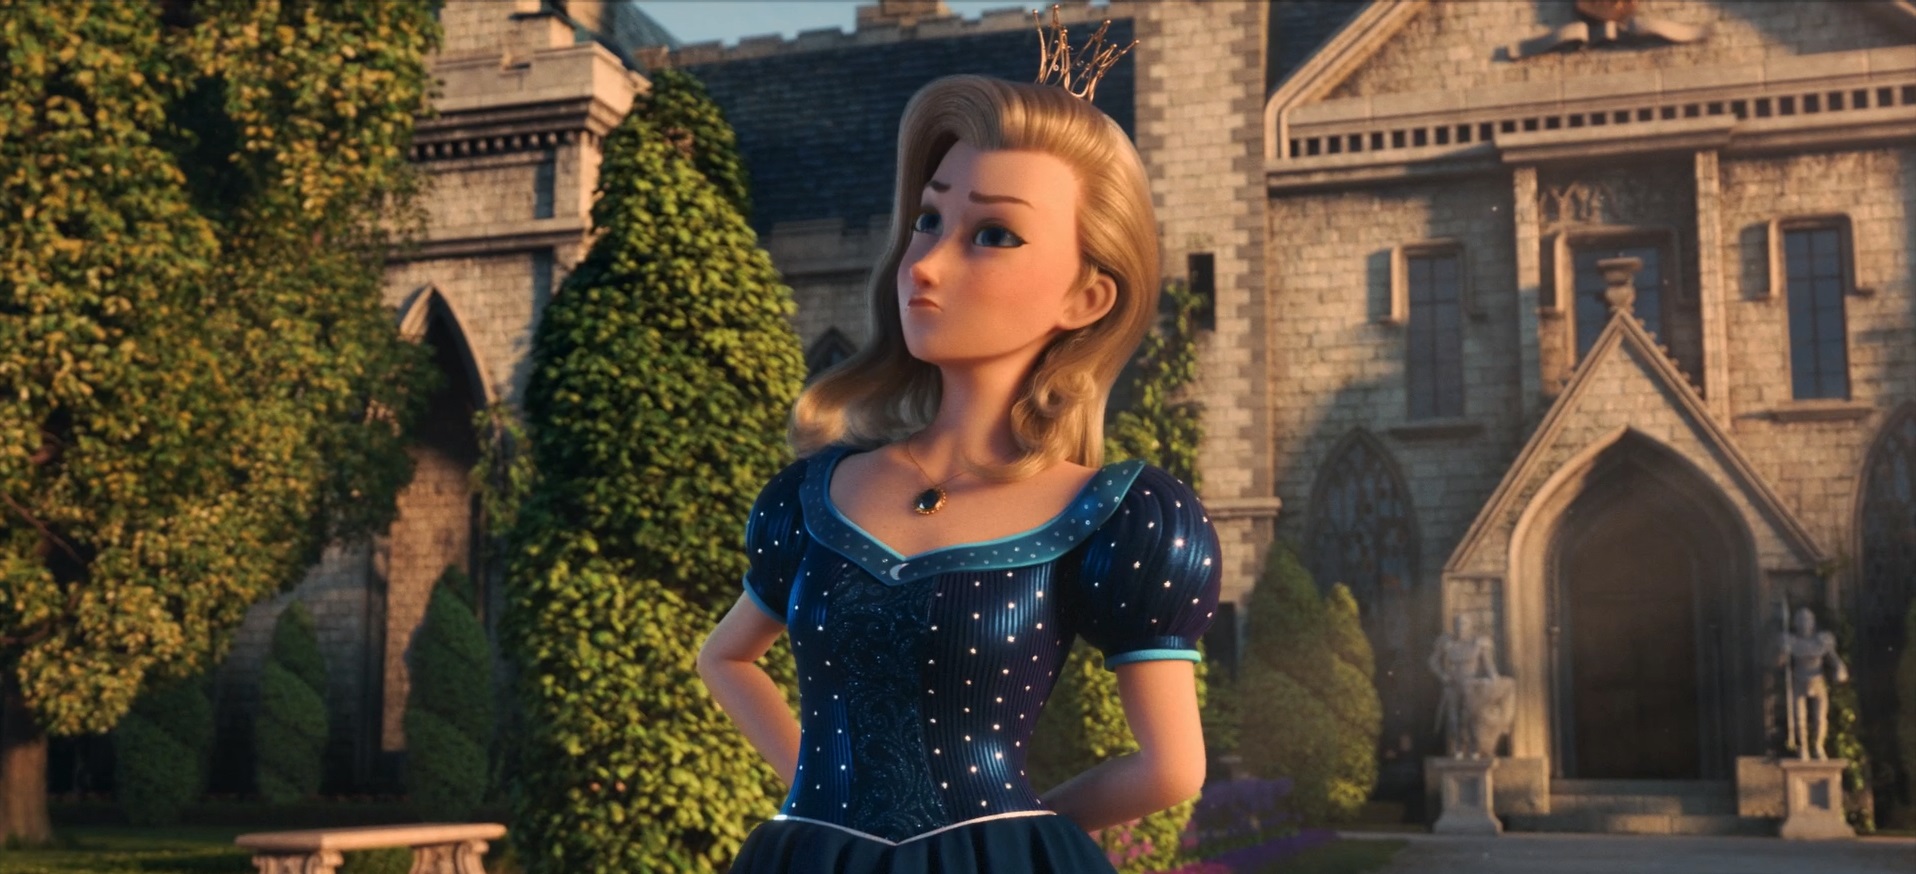 Tato klasická hra Proud Princess je navržena s 3D animací